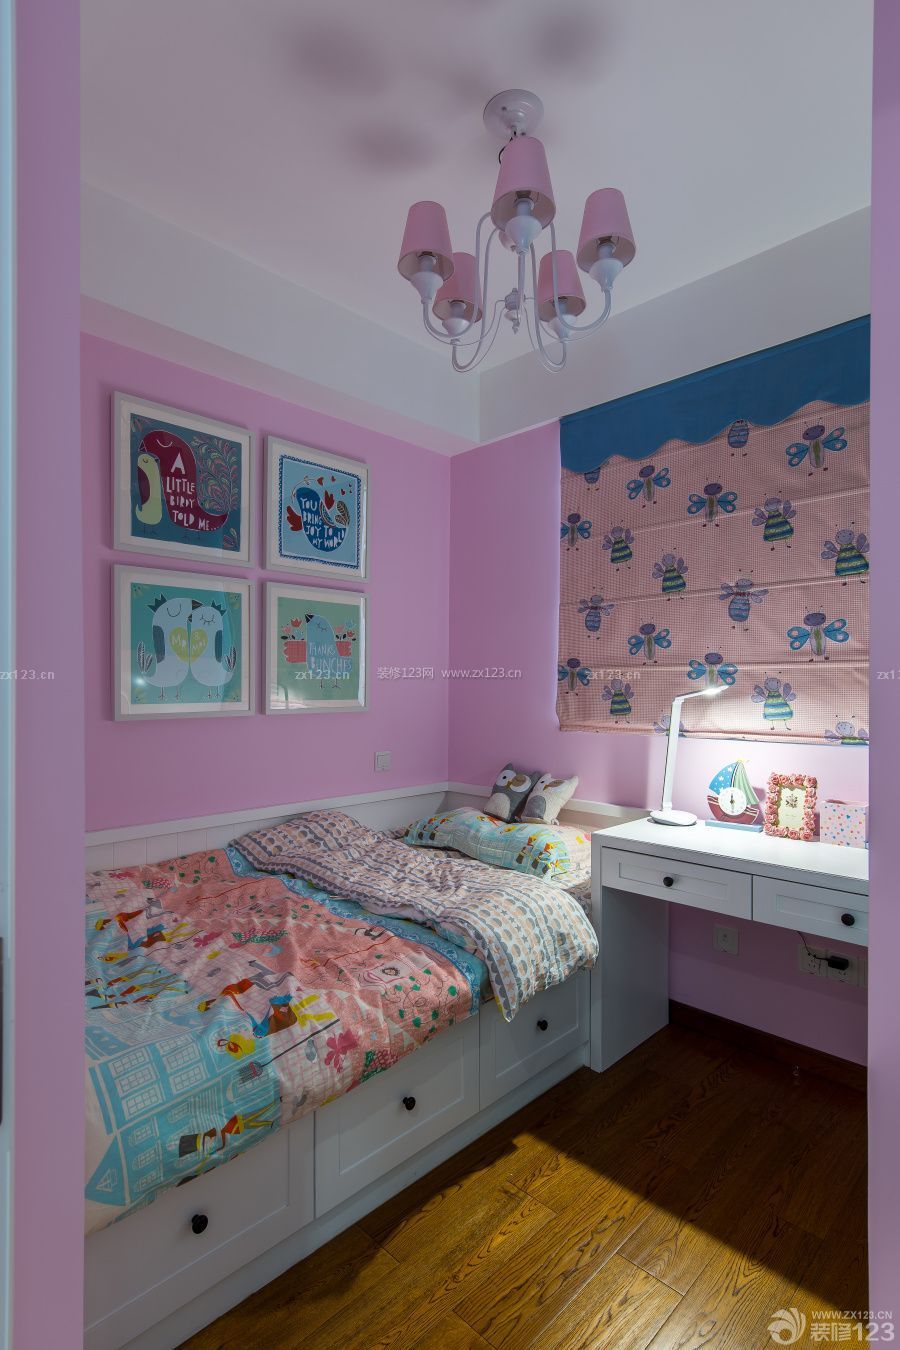 现代北欧风格粉色儿童房图片